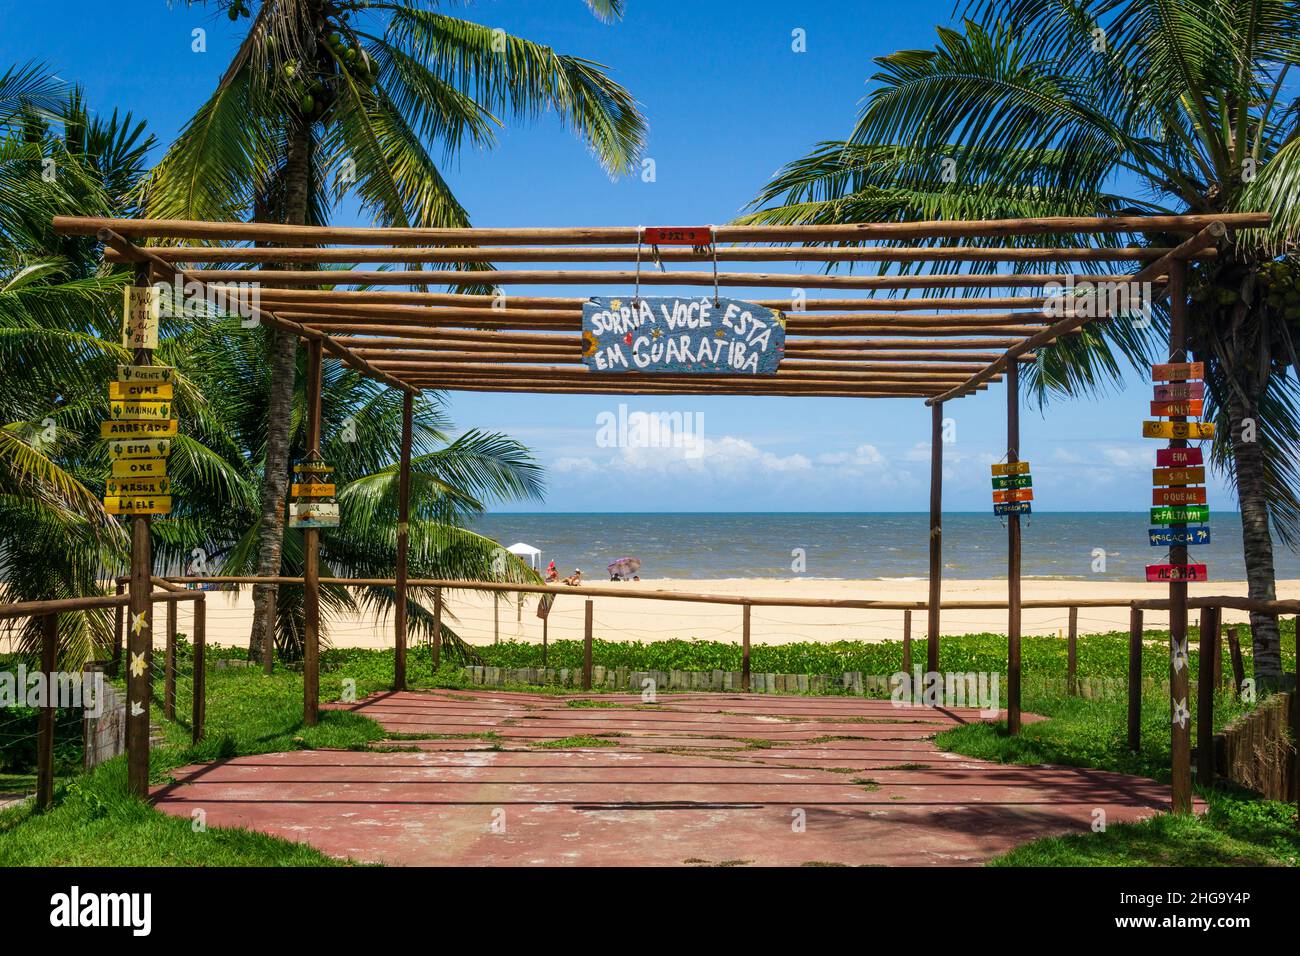 Sorria você está em Guaratiba, signo de madera pintado a mano para dar la bienvenida a los visitantes de la playa de Guaratiba, Prado, Bahia, Brasil. Foto de stock